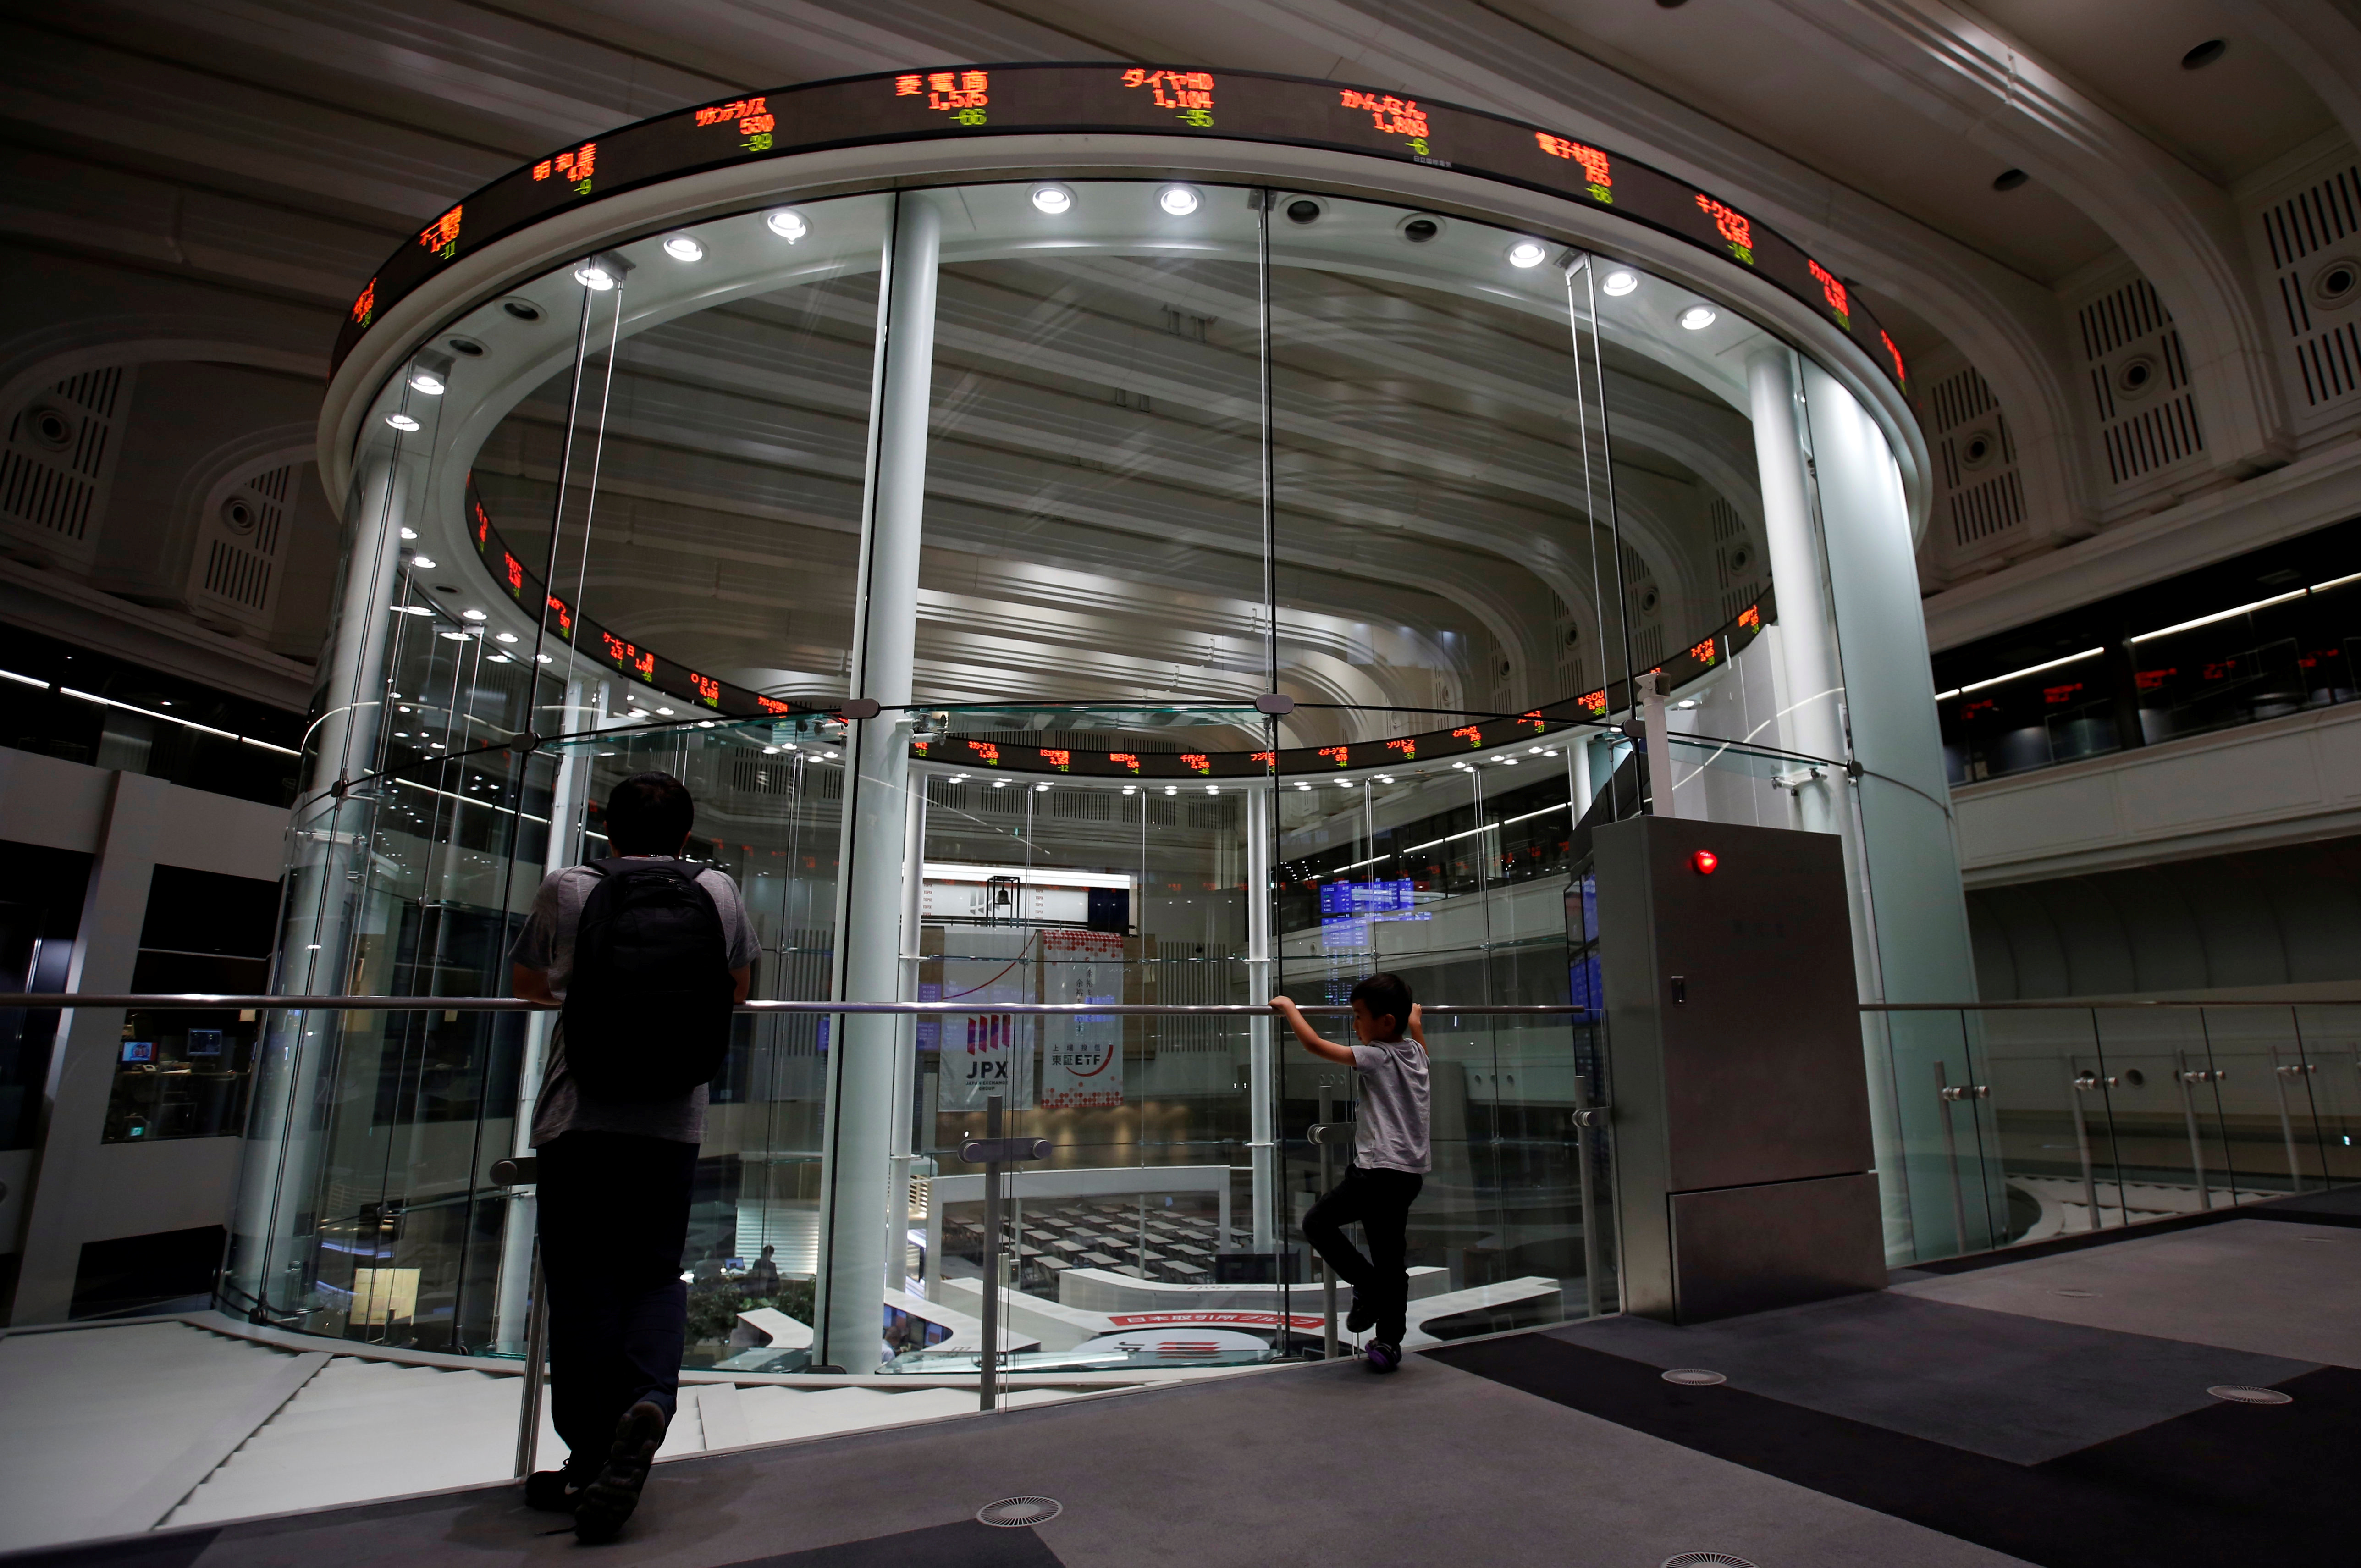 午前の日経平均は反落、米金利高で ハイテク株軟調 - ロイター (Reuters Japan)